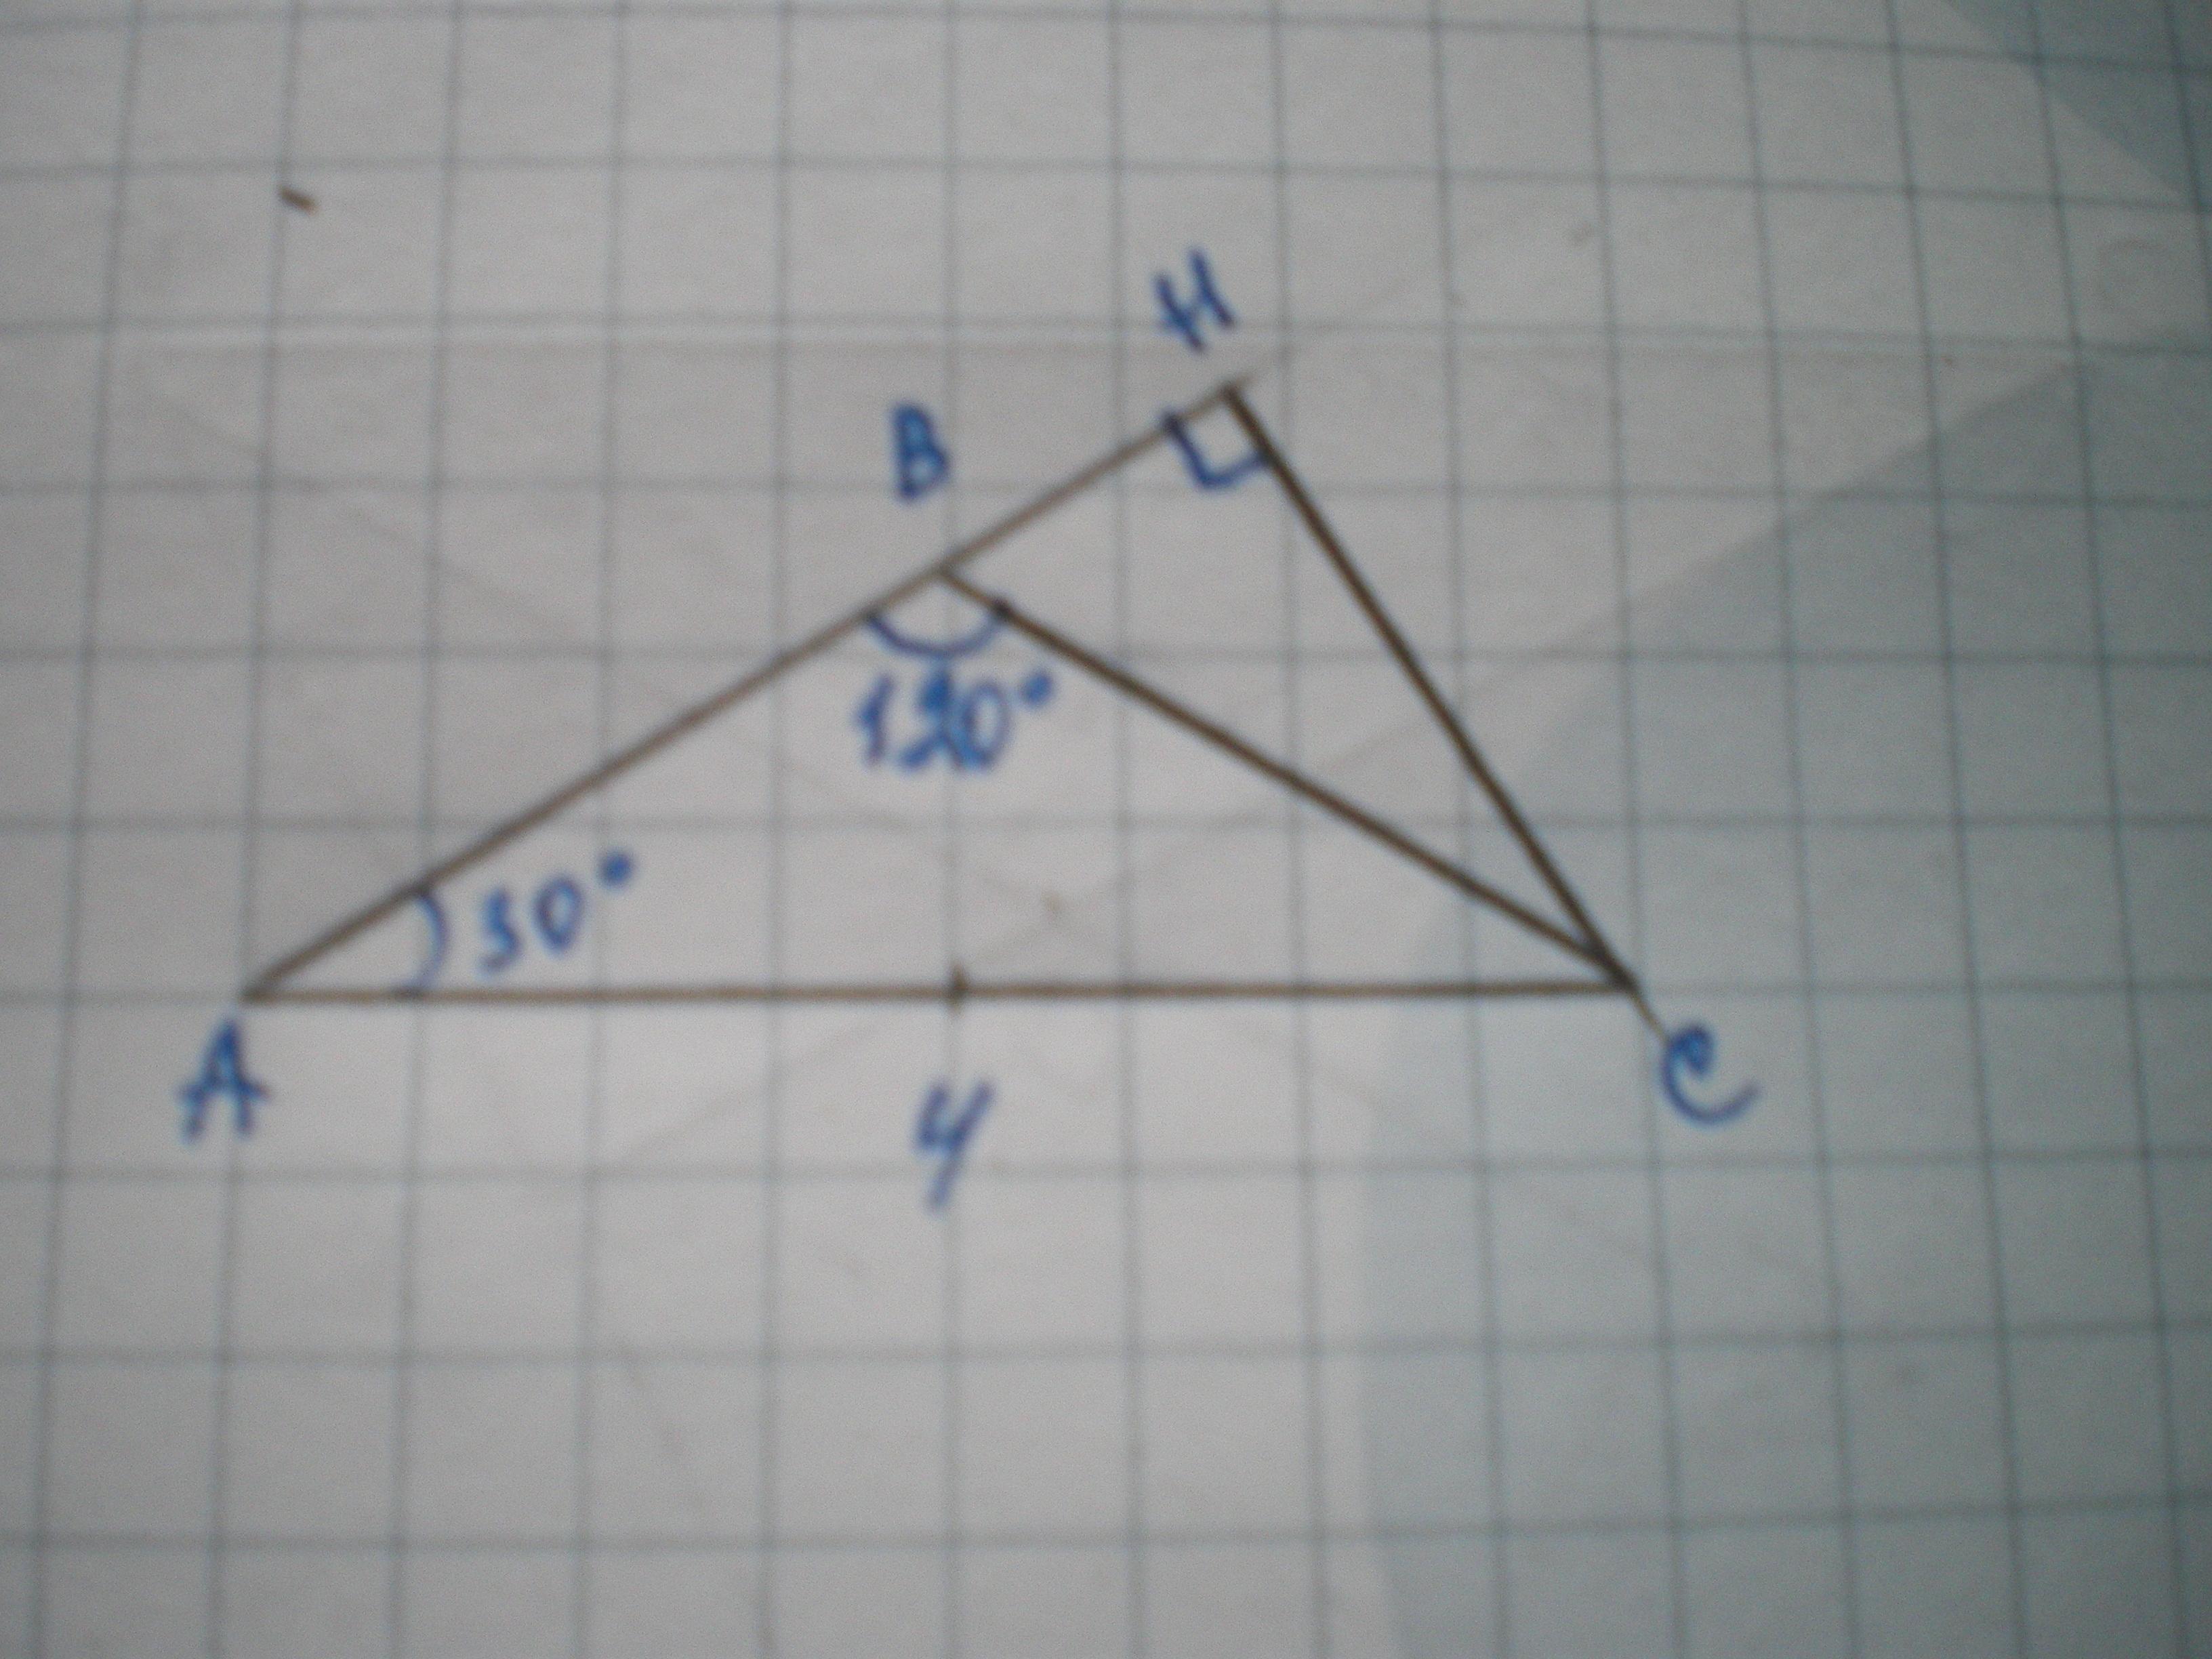 1 из углов треугольника равен 120